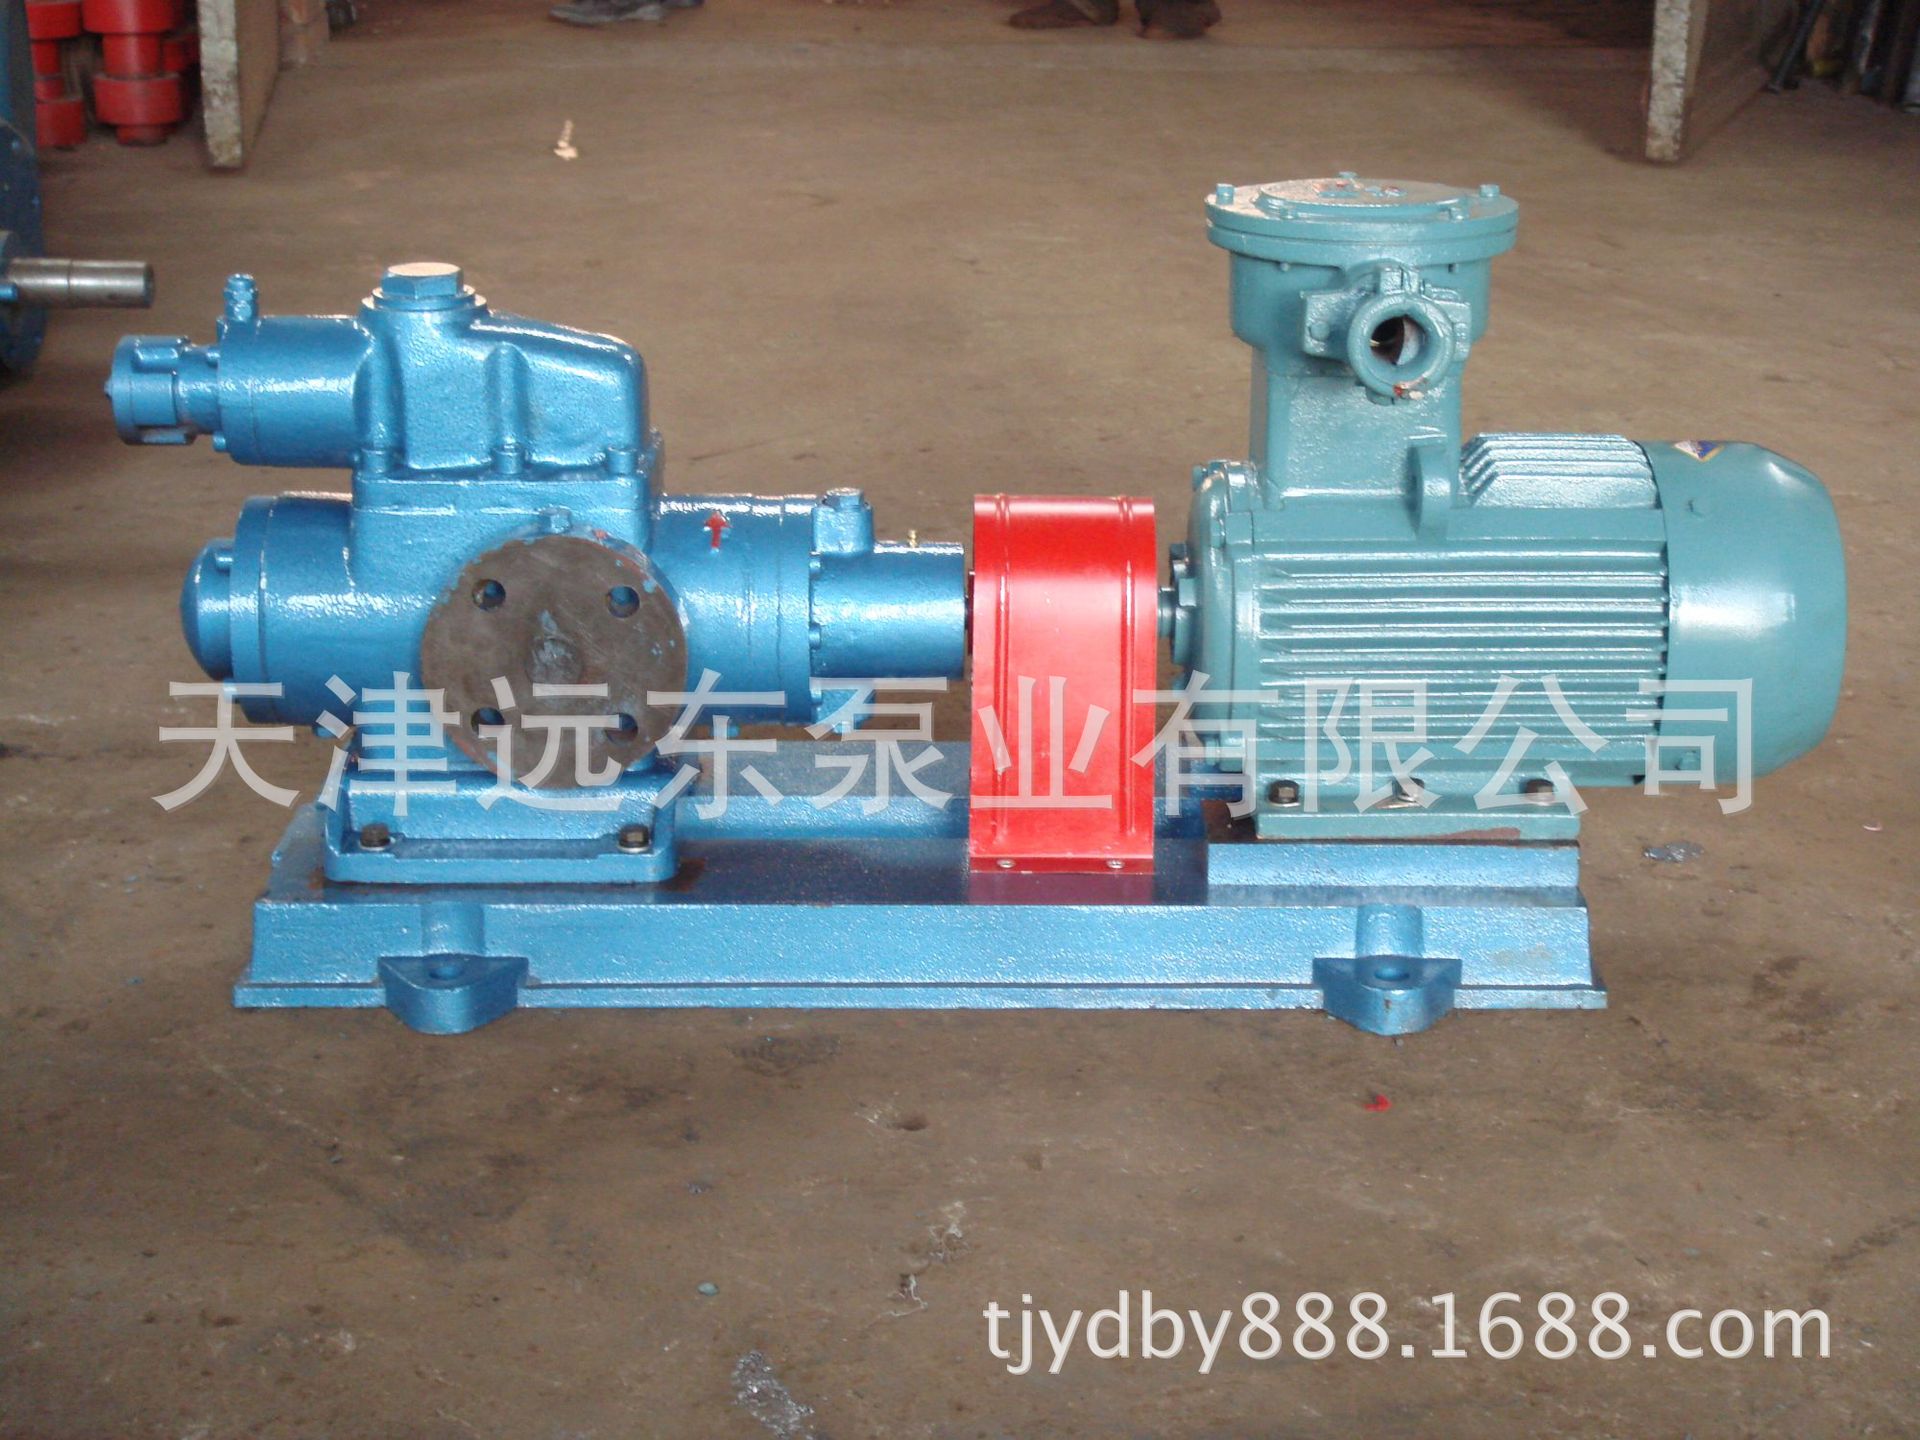 天津远东 SM三螺杆泵 SMH40R38E6.7W23 润滑油输送泵 厂家直销示例图2